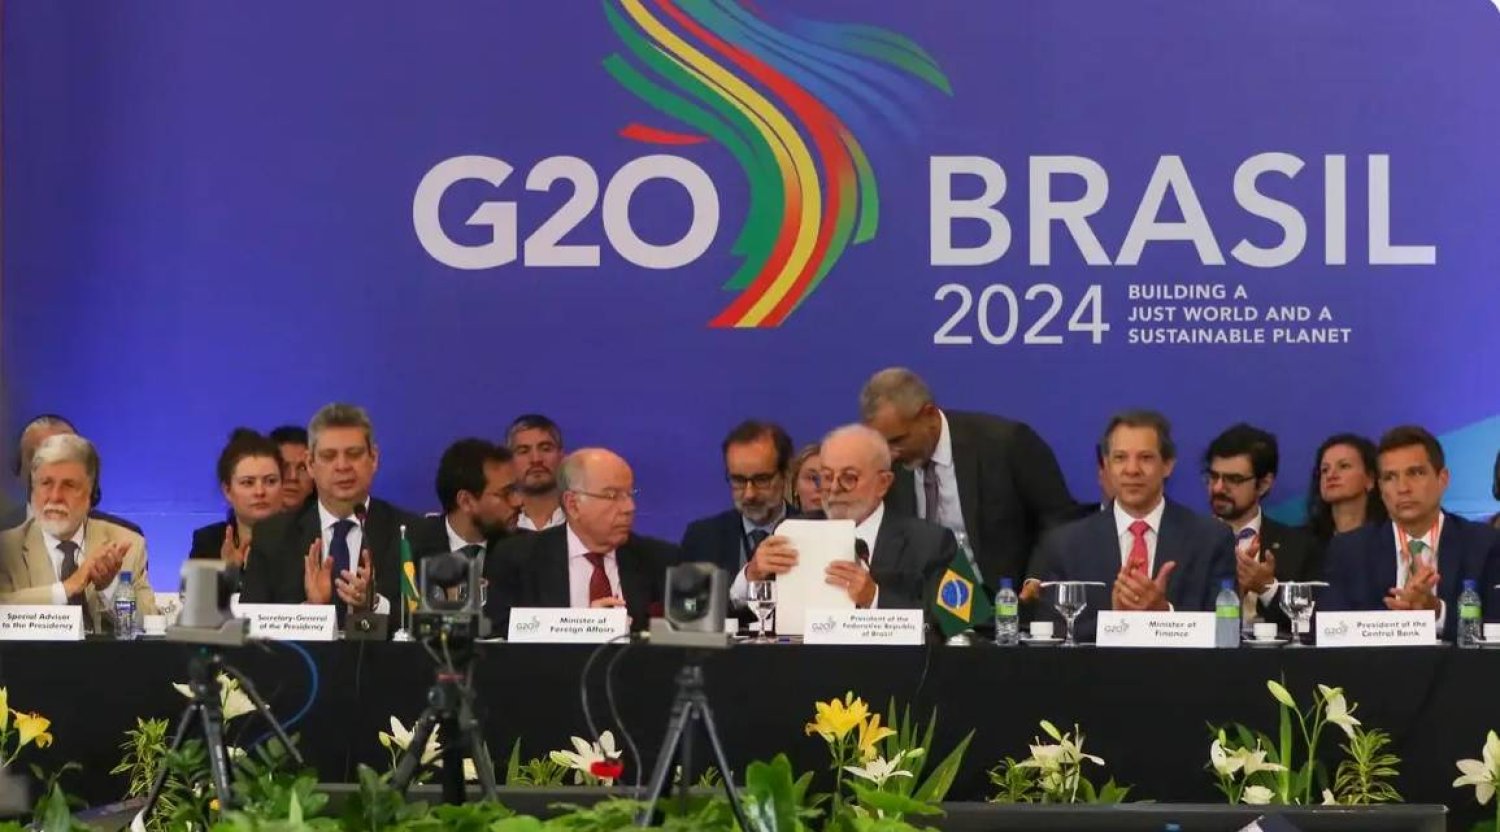 دعا الرئيس البرازيلي لويز إيناسيو لولا دا سيلفا الذي ترأس مجموعة العشرين في 13 ديسمبر إلى إنشاء آليات ضريبية دولية للمساعدة في تمويل التنمية المستدامة (وكالة البرازيل)